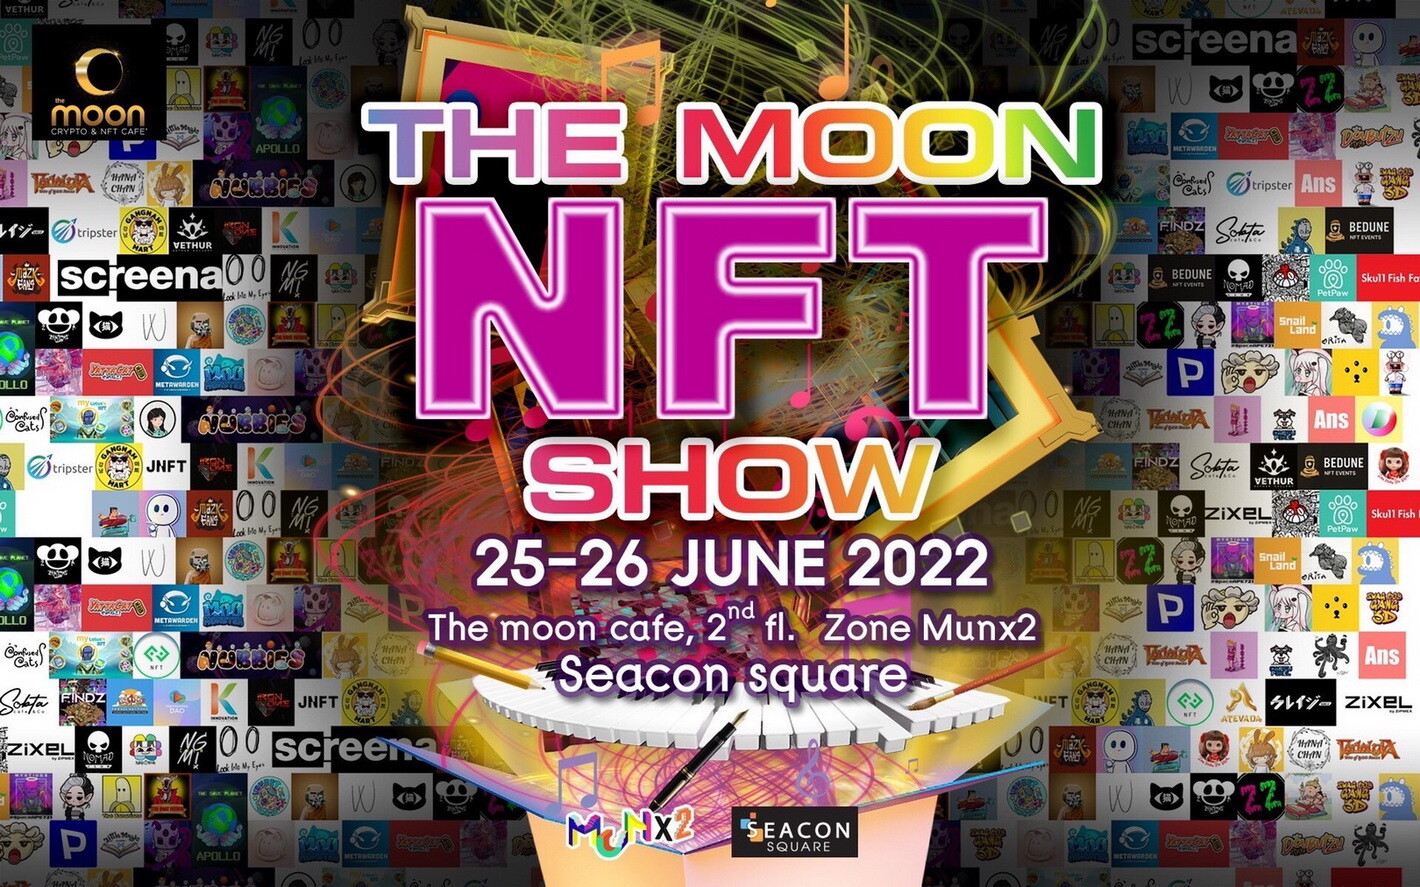 25-26 มิ.ย. นี้ ซีคอนสแควร์ ศรีนครินทร์ ร่วมกับ The Moon : Crypto & NFT Cafe  จัดงาน "The Moon NFT Show" รวมผลงาน NFT สุดยิ่งใหญ่แห่งปี